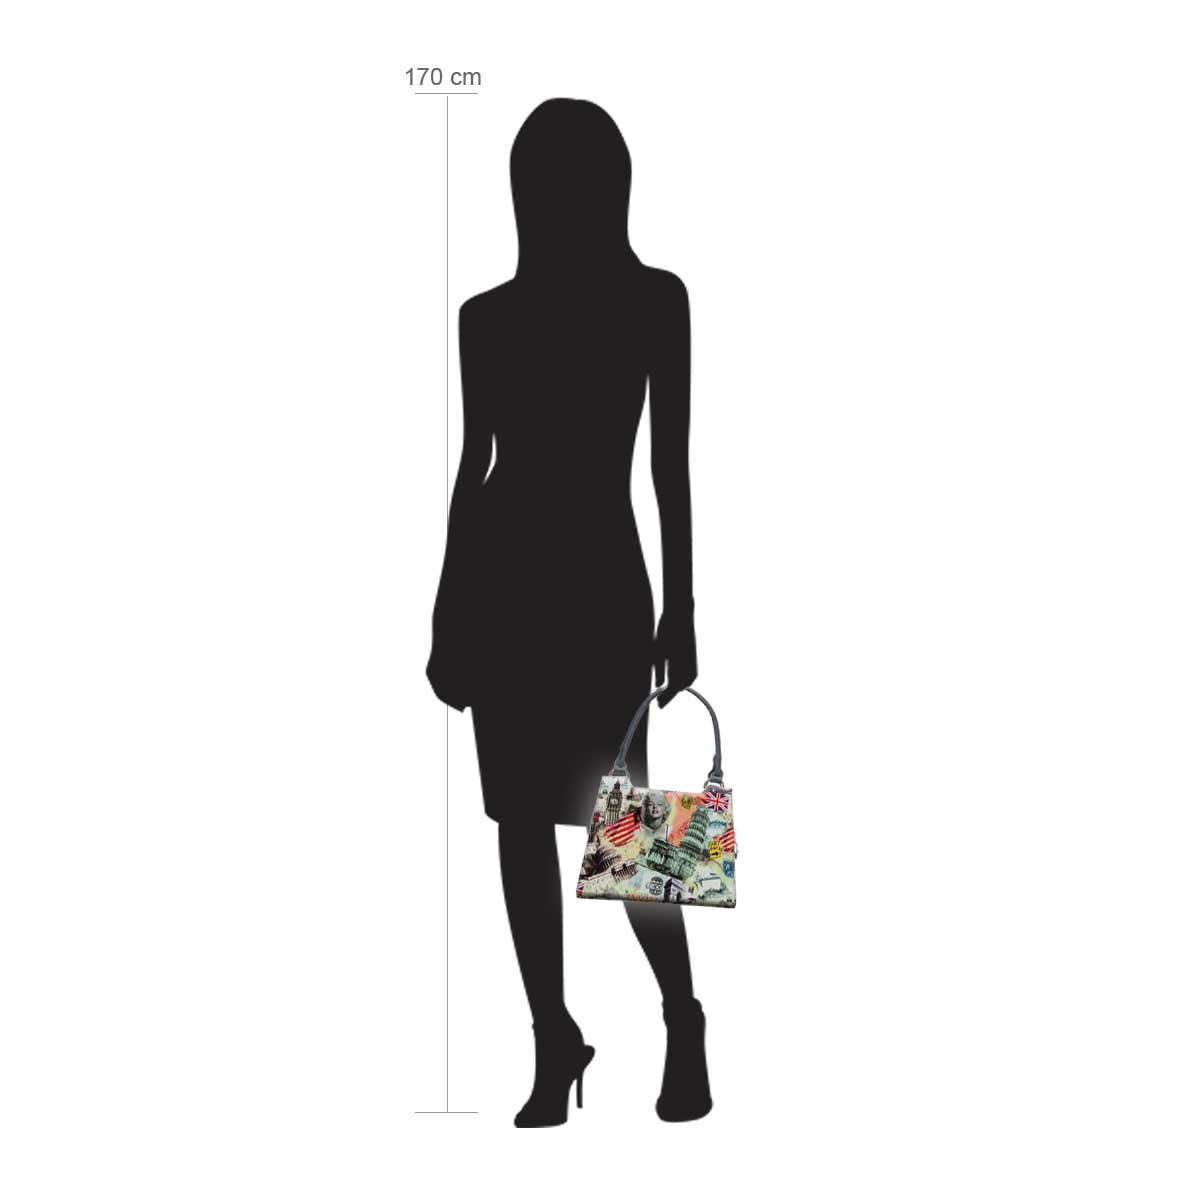 Modellpuppe 170 cm groß zeigt die Handtaschengröße an der Person Modell:Rhapsody